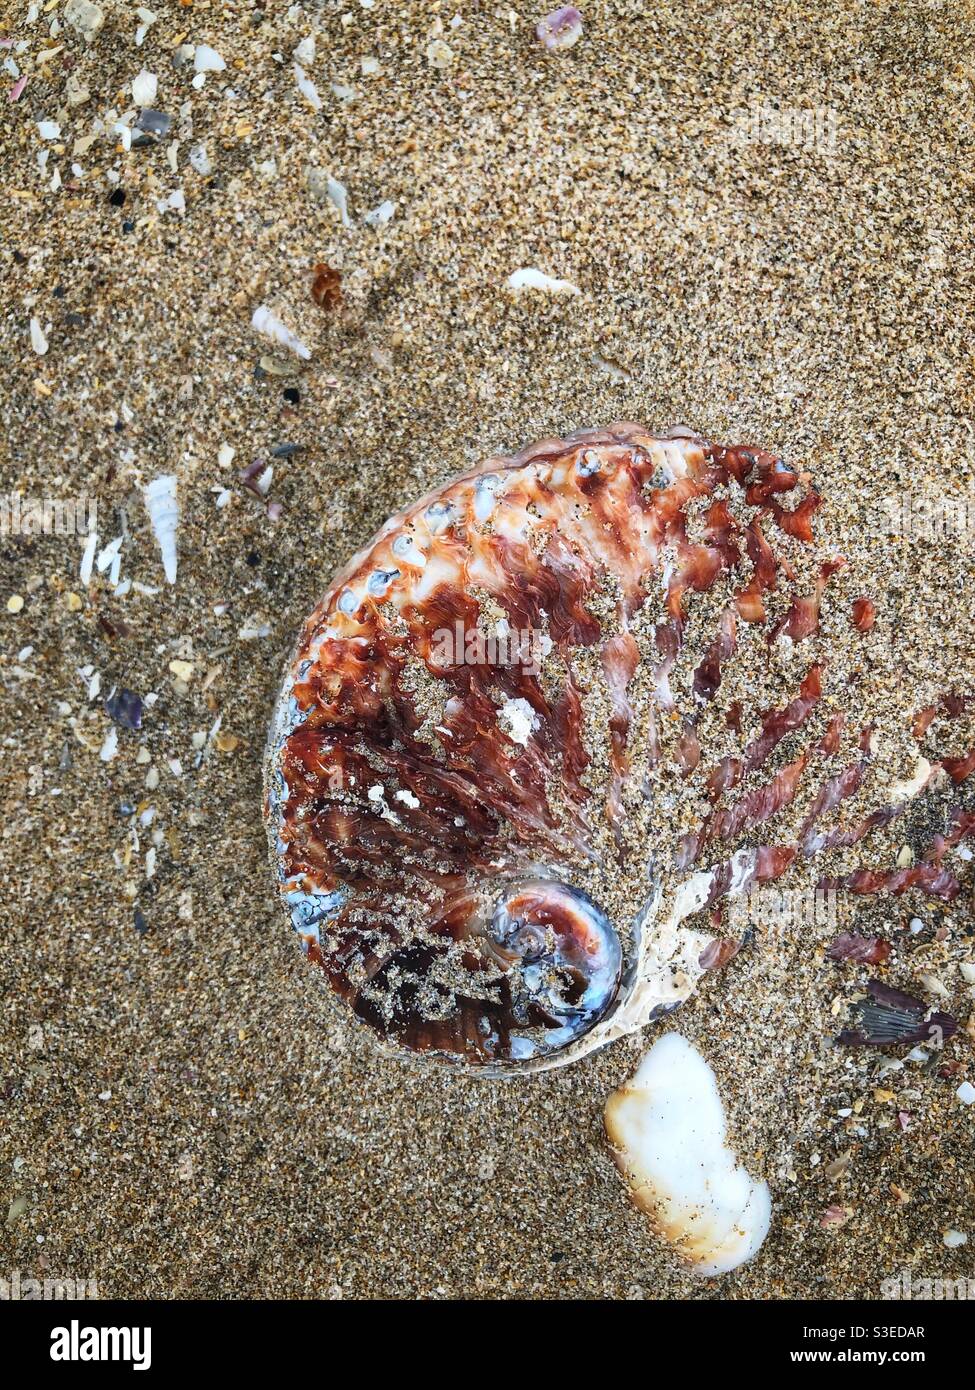 Perlemoen (Abalone) Muschel halb im Sand bei Ebbe an einem Strand im östlichen Kap, Südafrika begraben Stockfoto